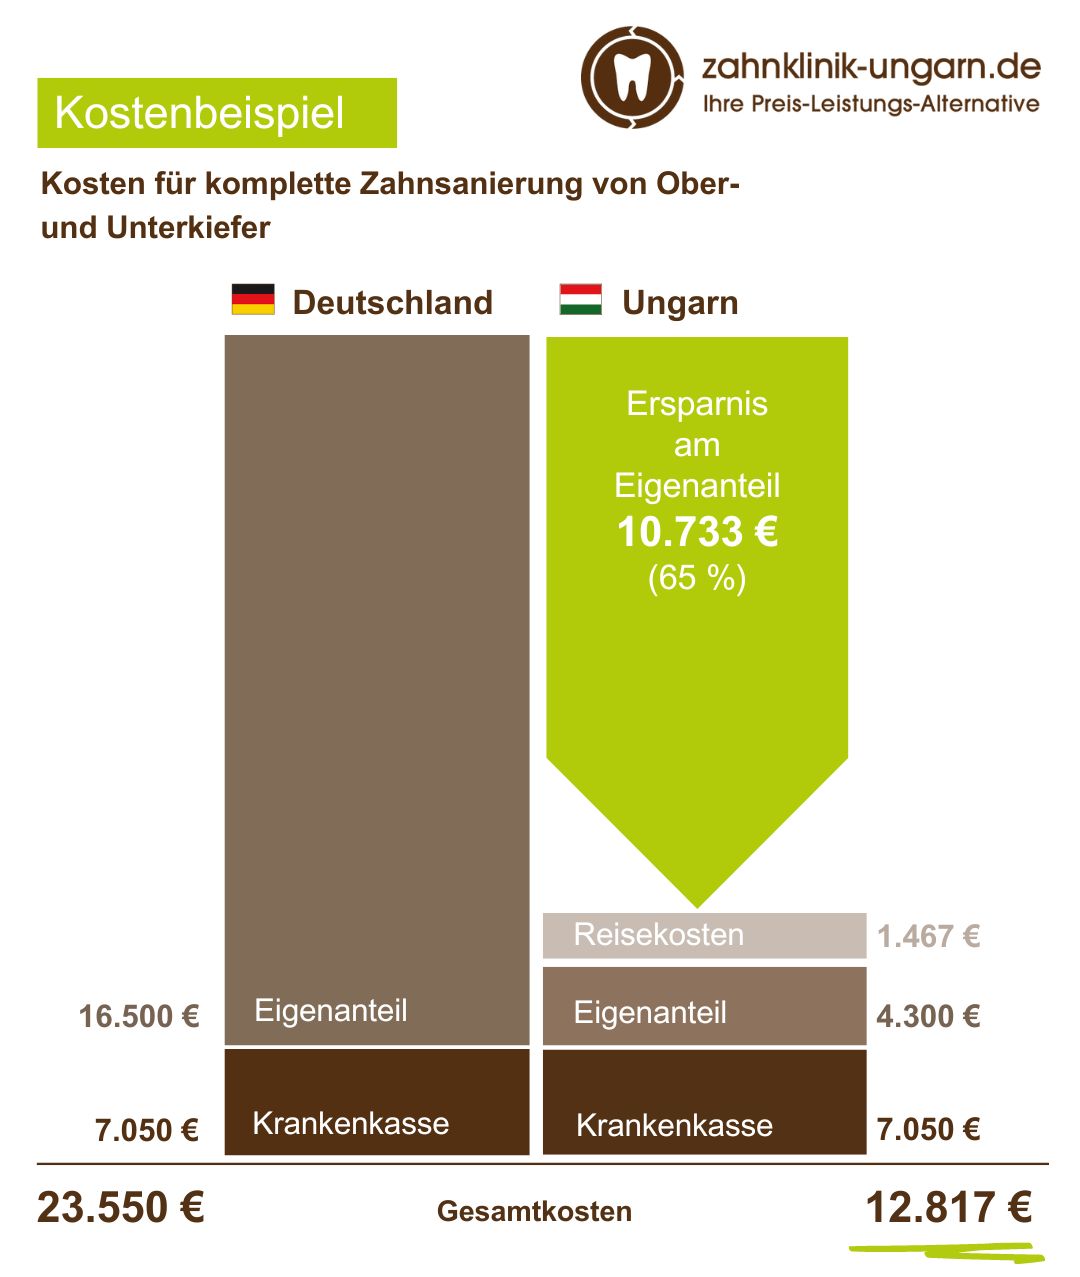 Kosten für komplette Zahnsanierung von Ober- und Unterkiefer, Schaubild mit Kostenvergleich Ungarn - Deutschland